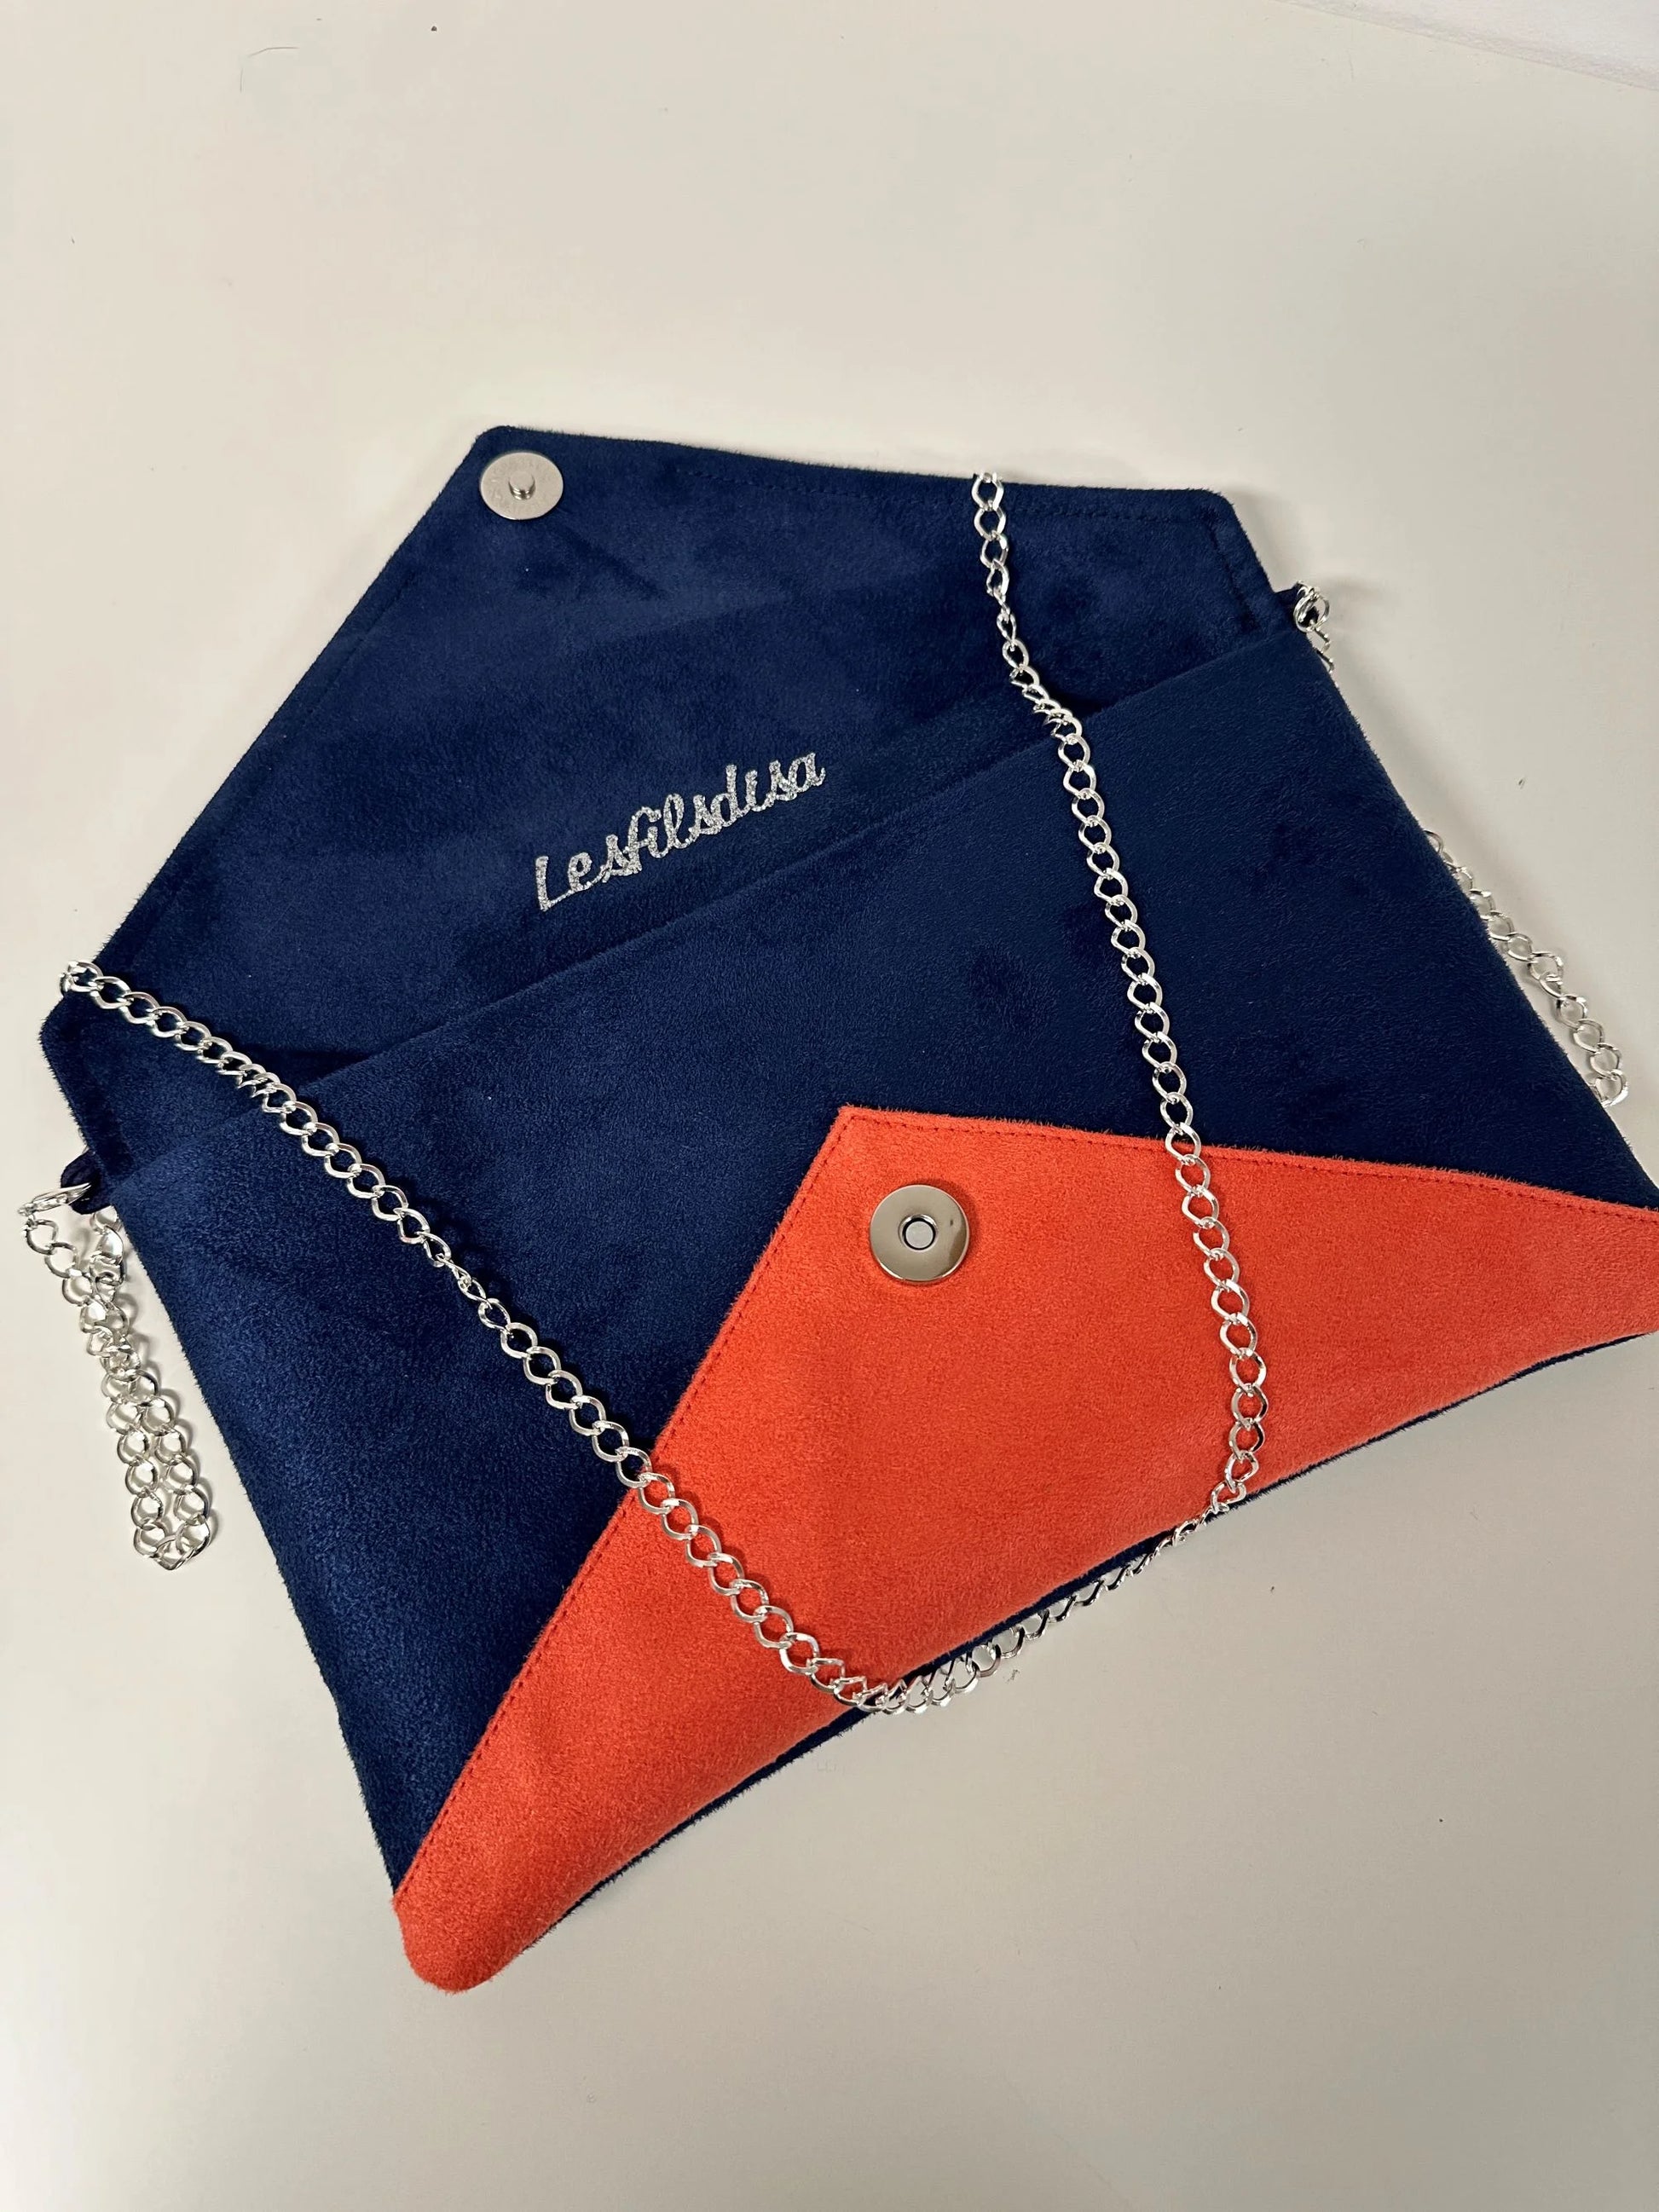 Le sac pochette Isa bleu marine et corail à paillettes argentées, avec chainette amovible, ouvert.